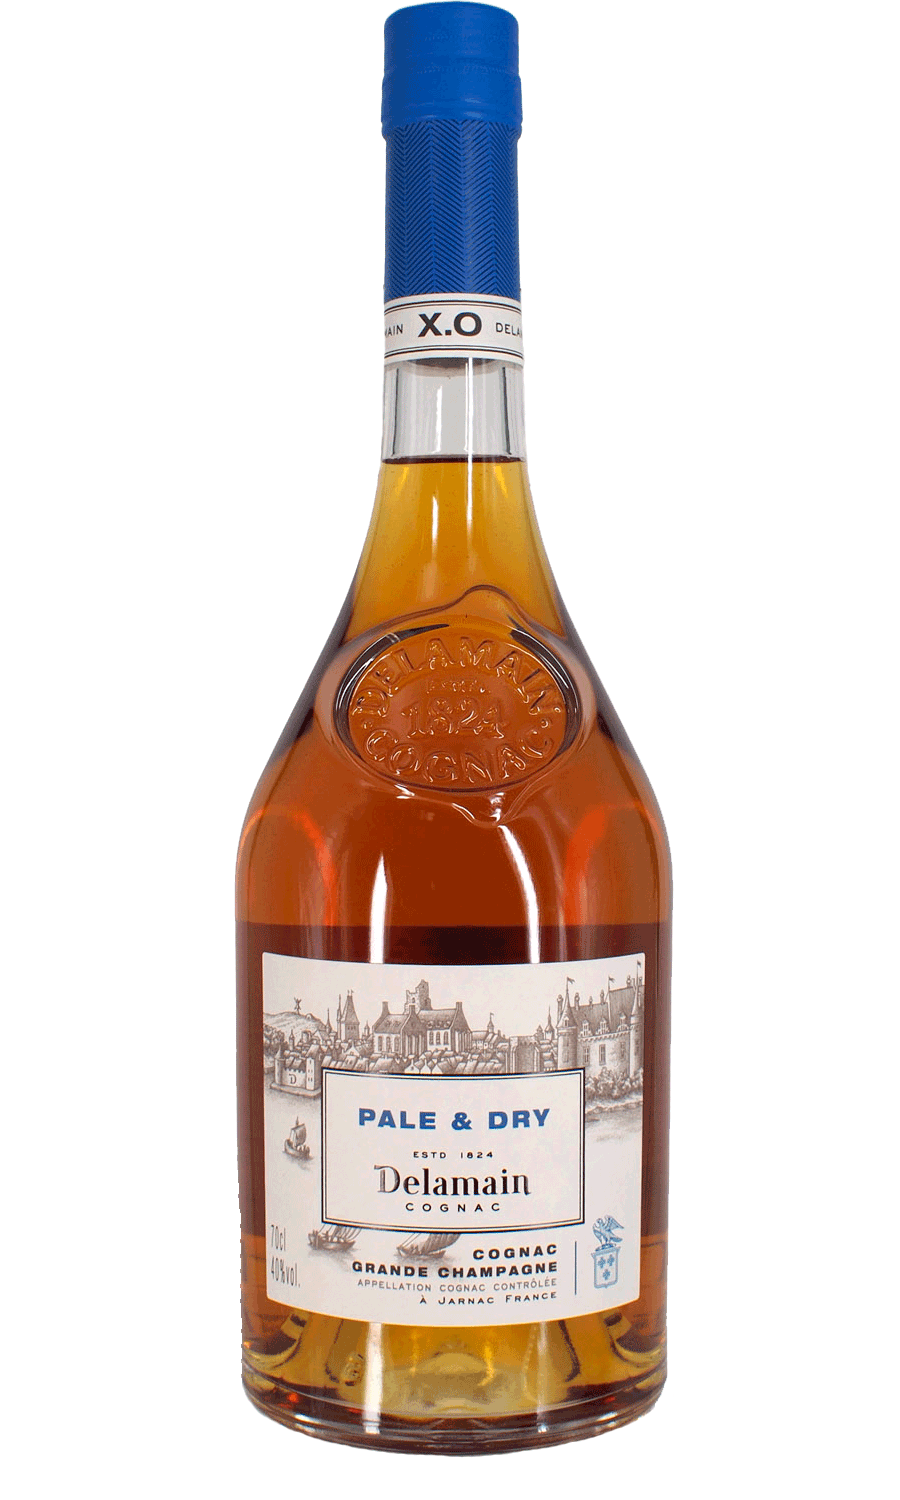 Delamain Cognac Pale & Dry X.O. Centenaire